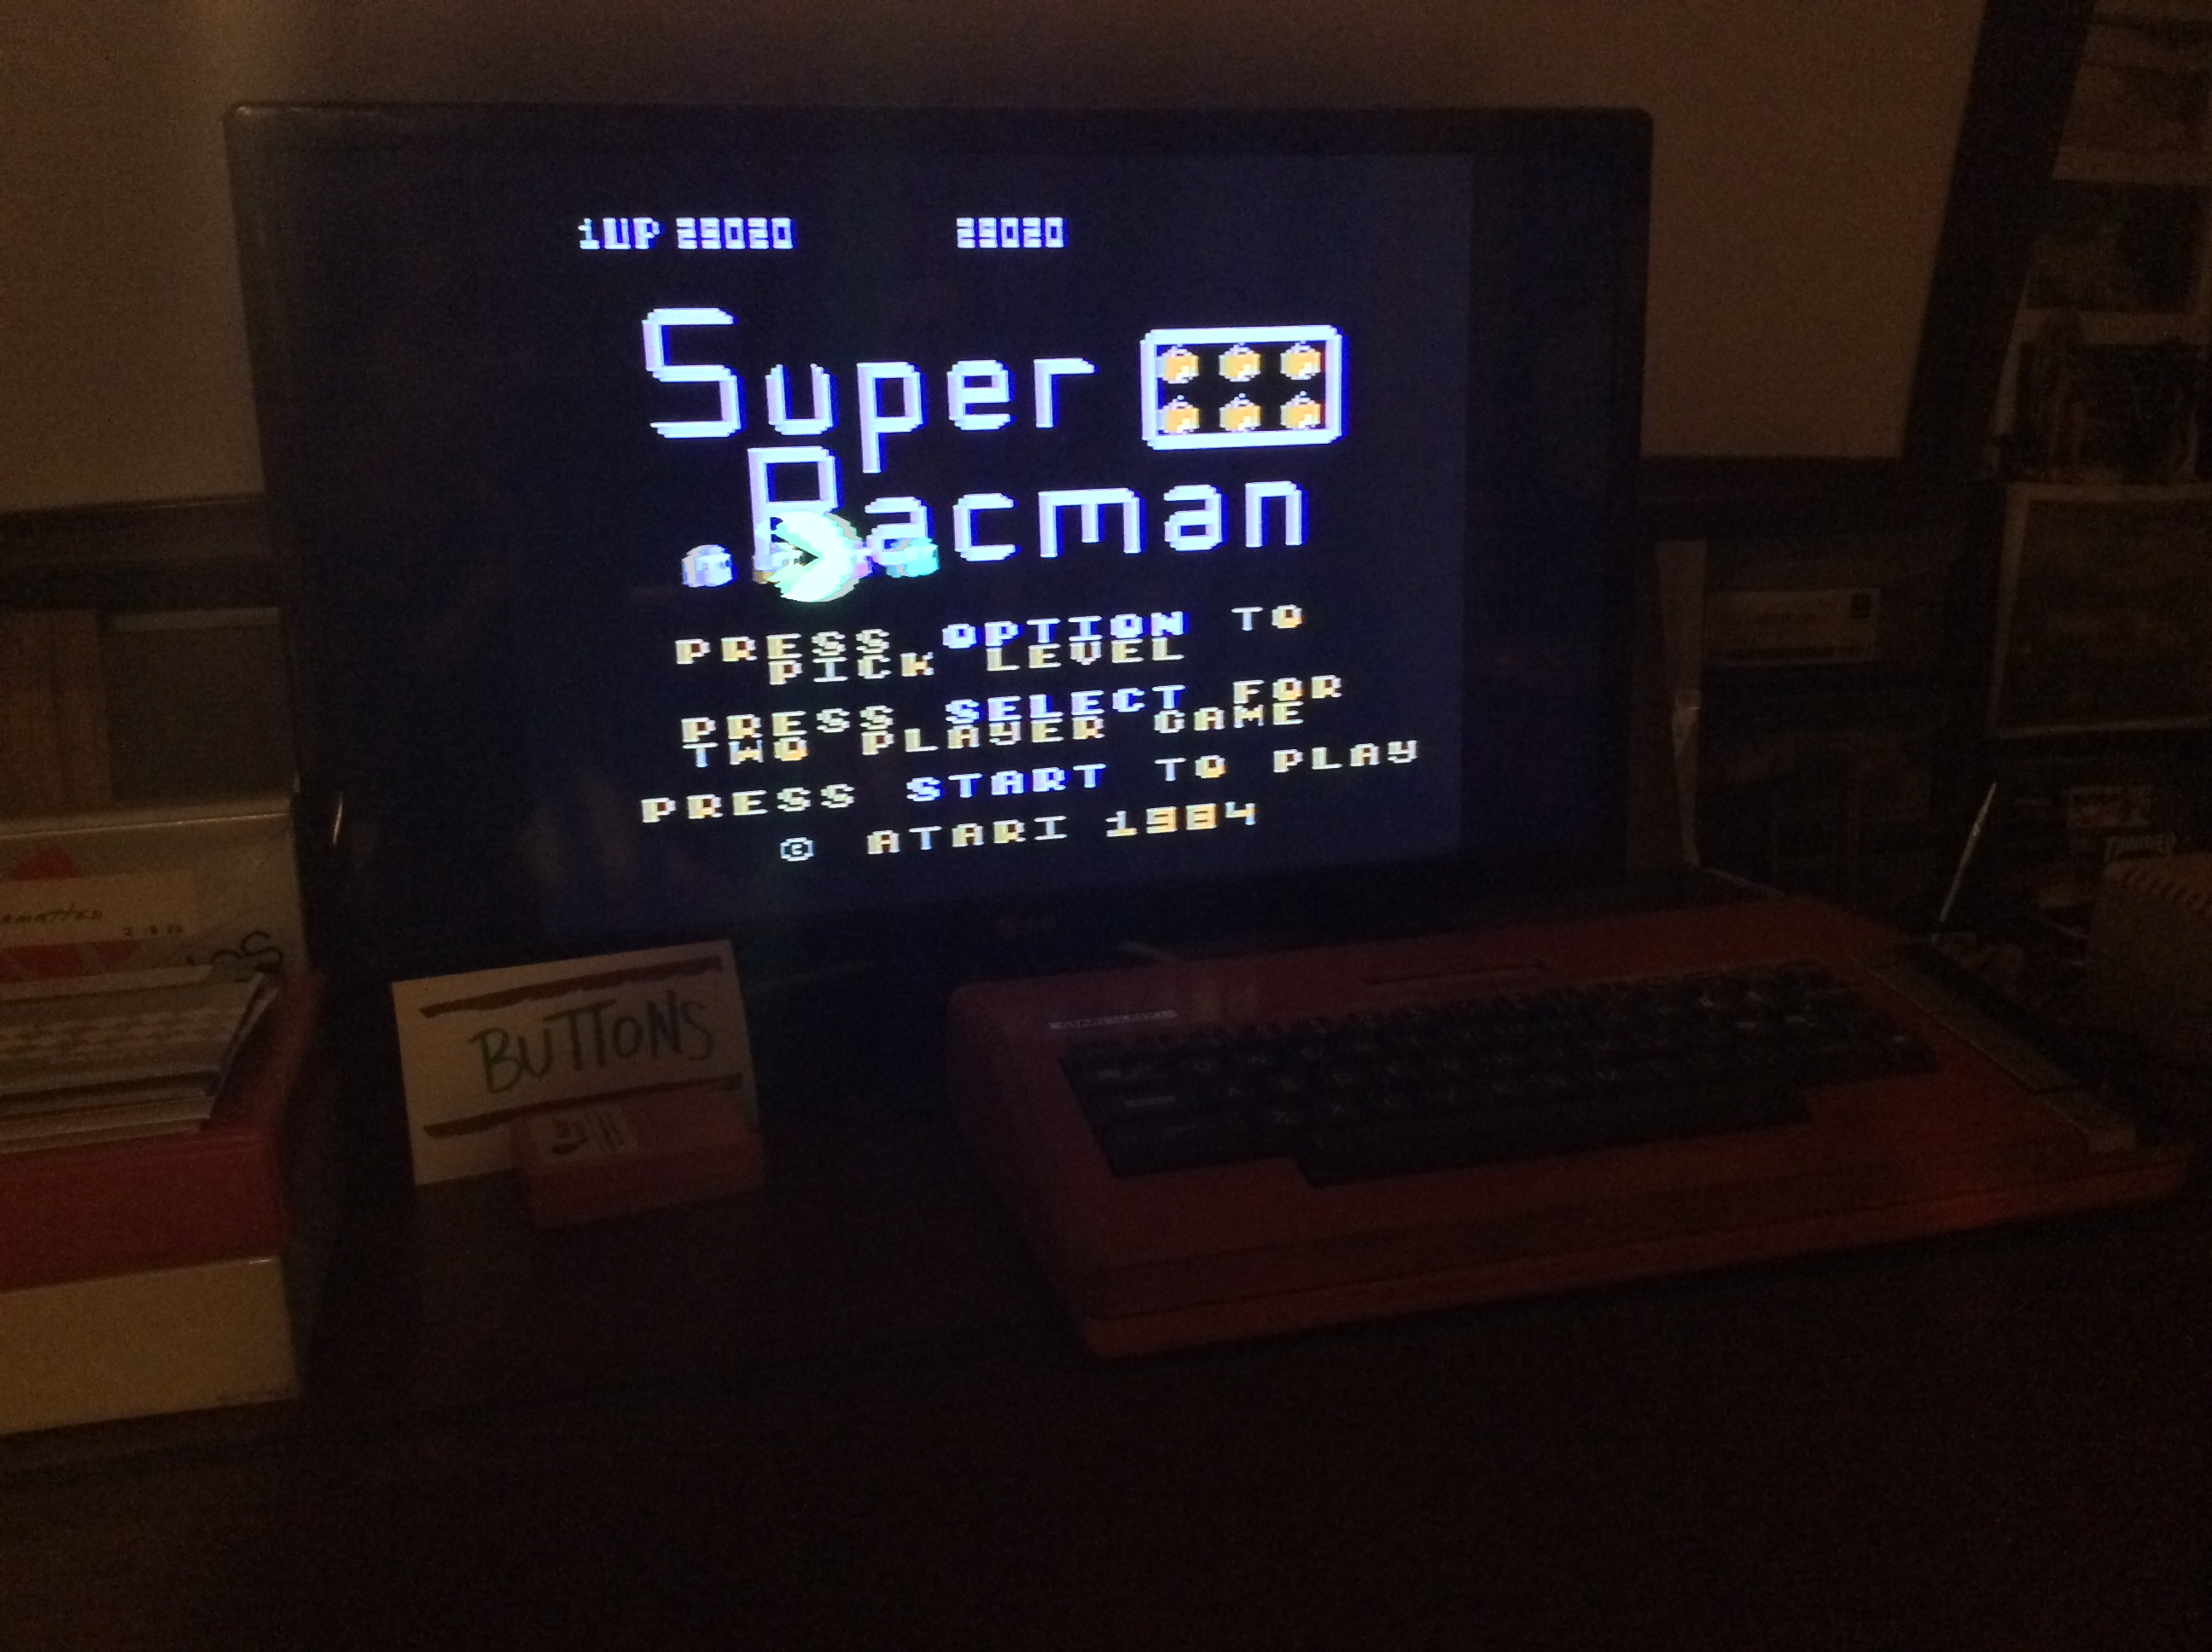 Super Pacman [Default settings] 29,020 points